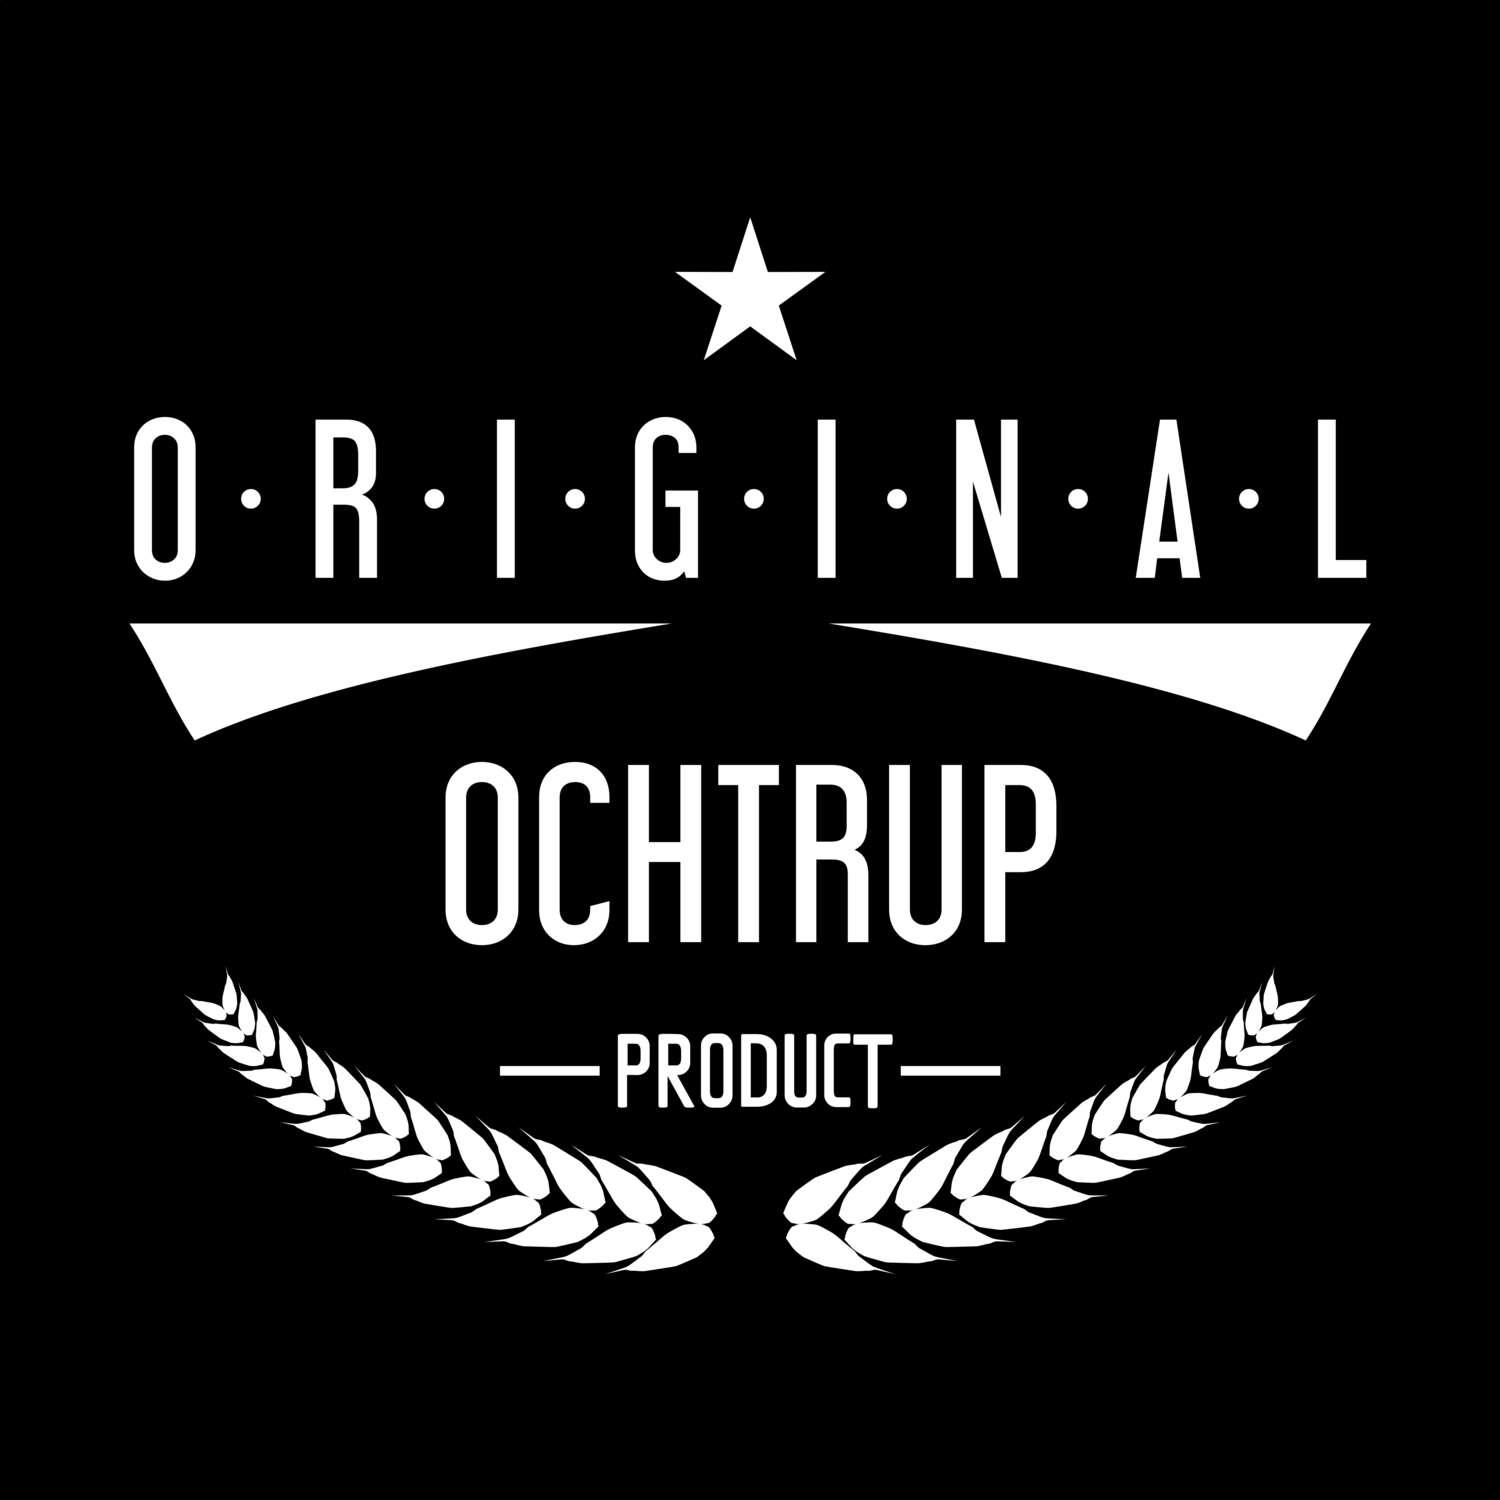 Ochtrup T-Shirt »Original Product«